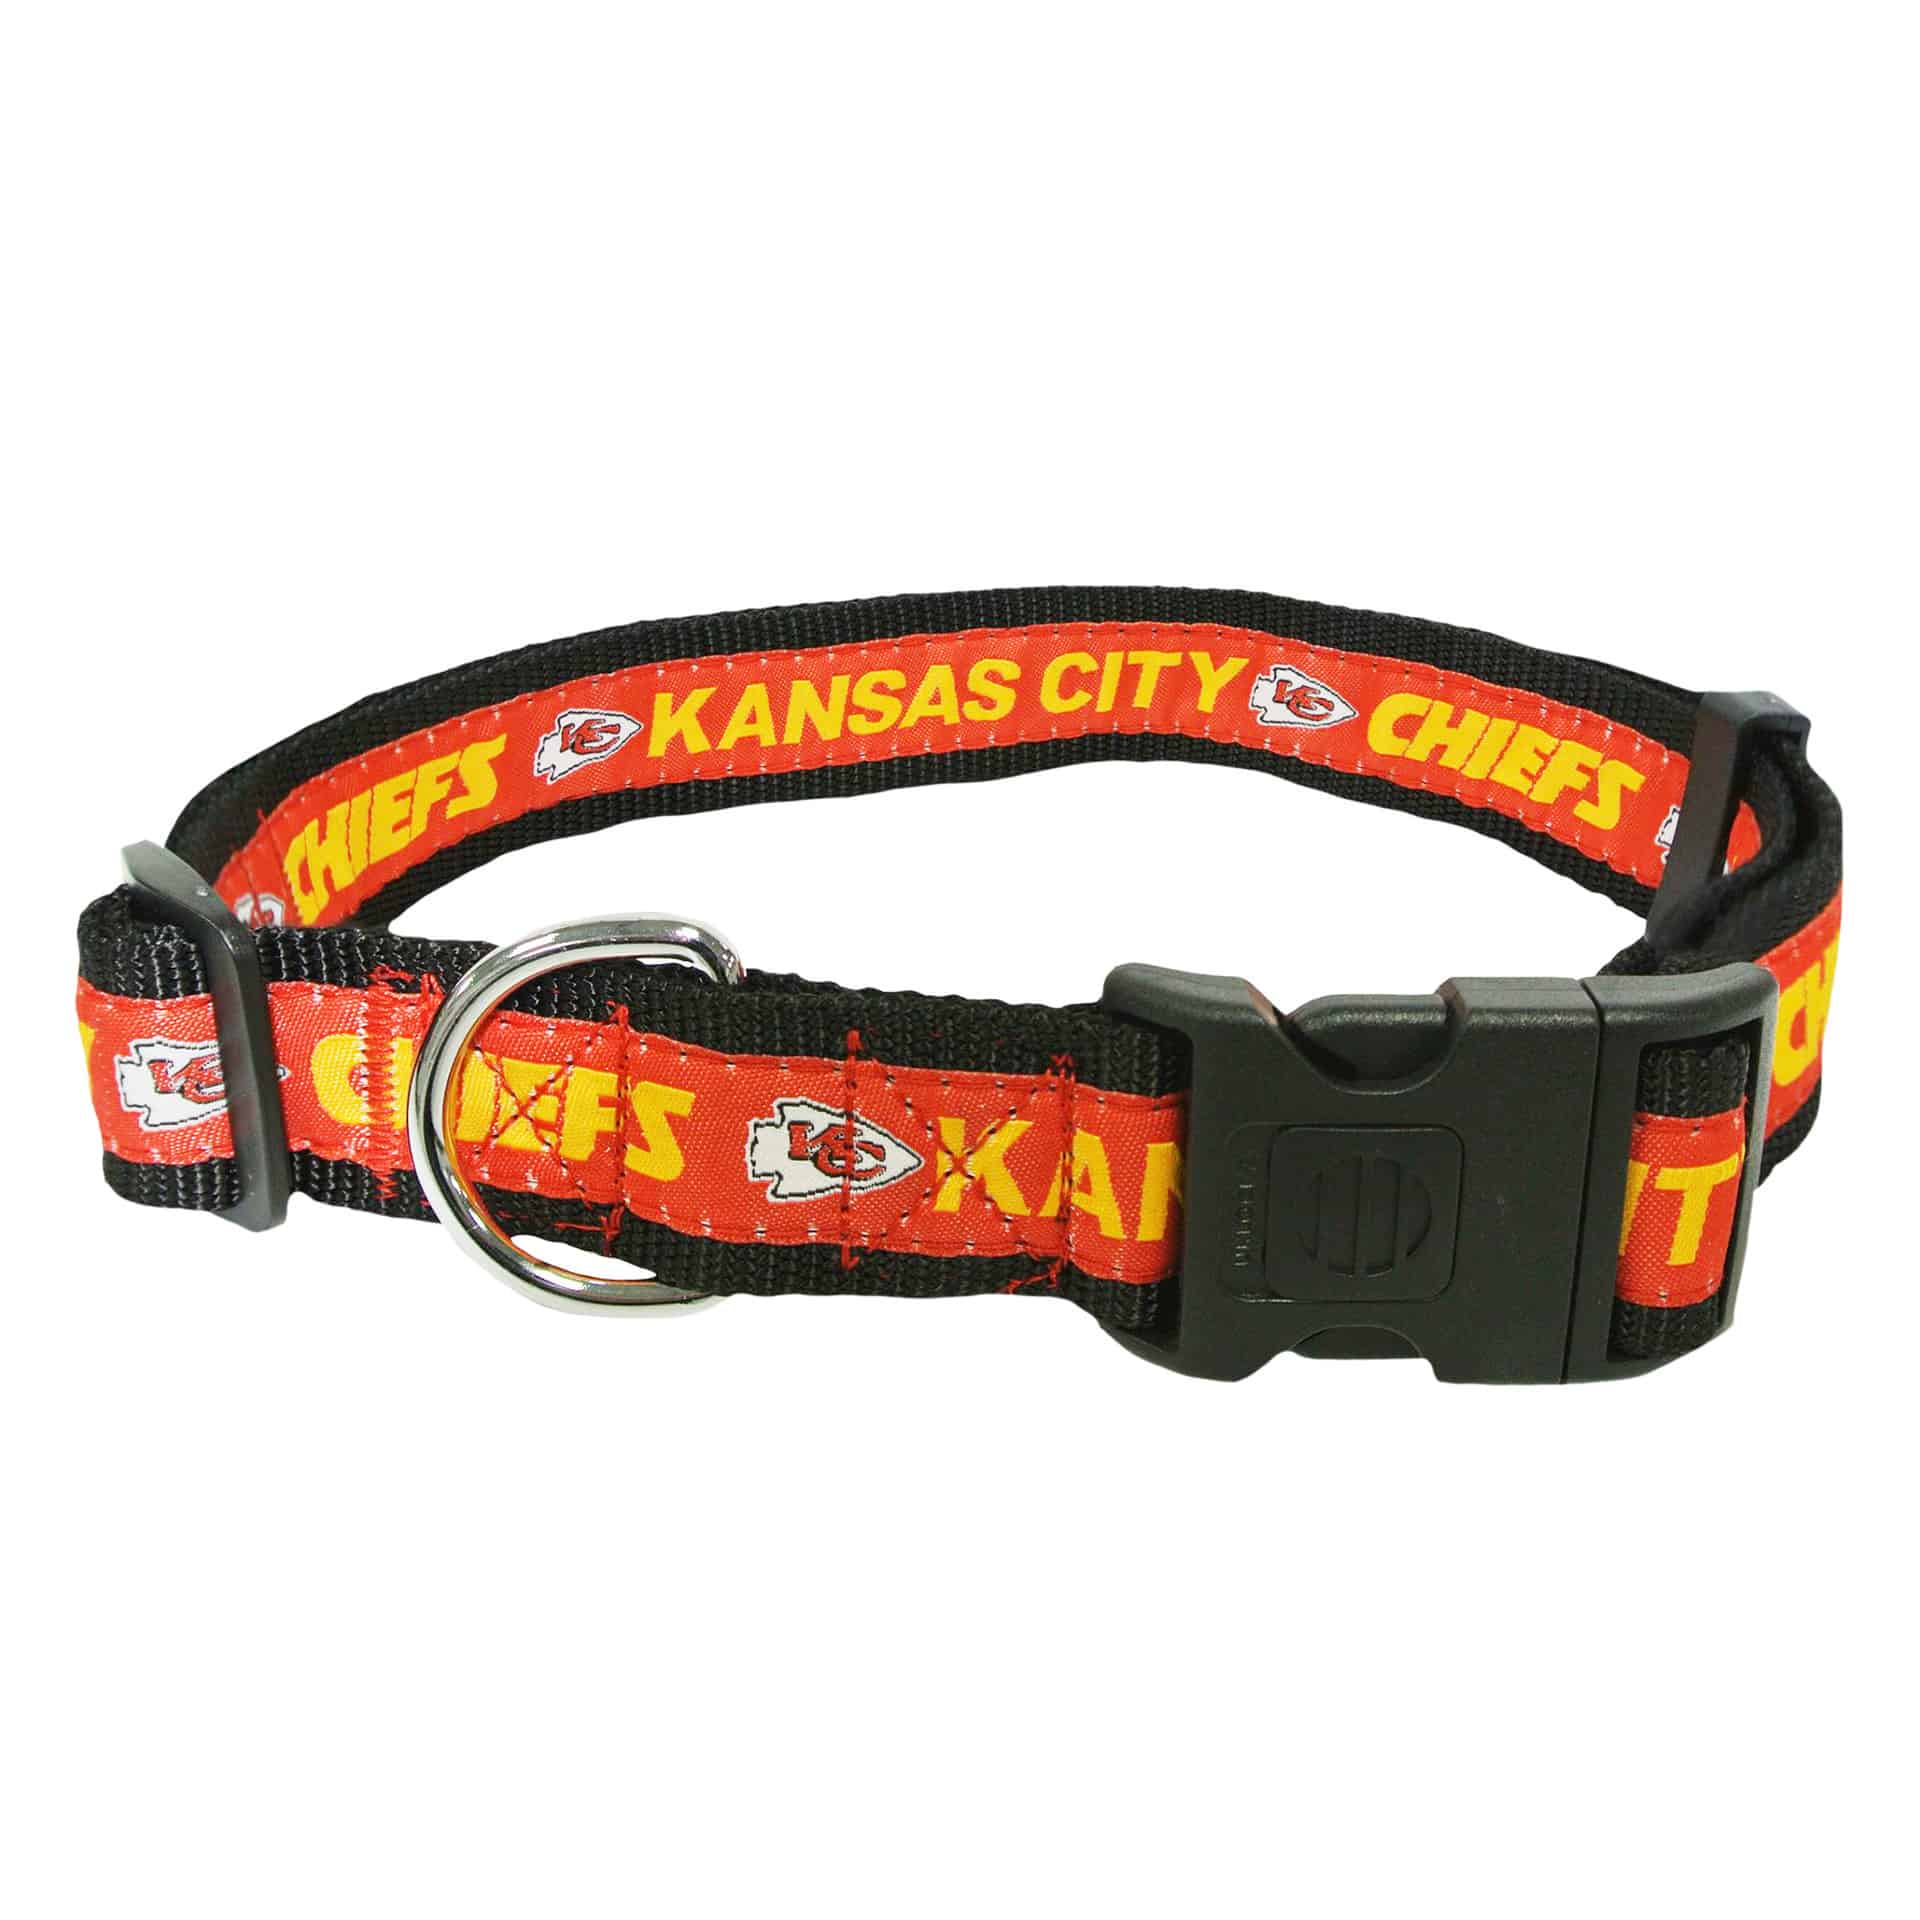 Zubaz X Pets First NFL Kansas City Chiefs Collar For Dogs & Cats, Medium -  Yahoo Shopping